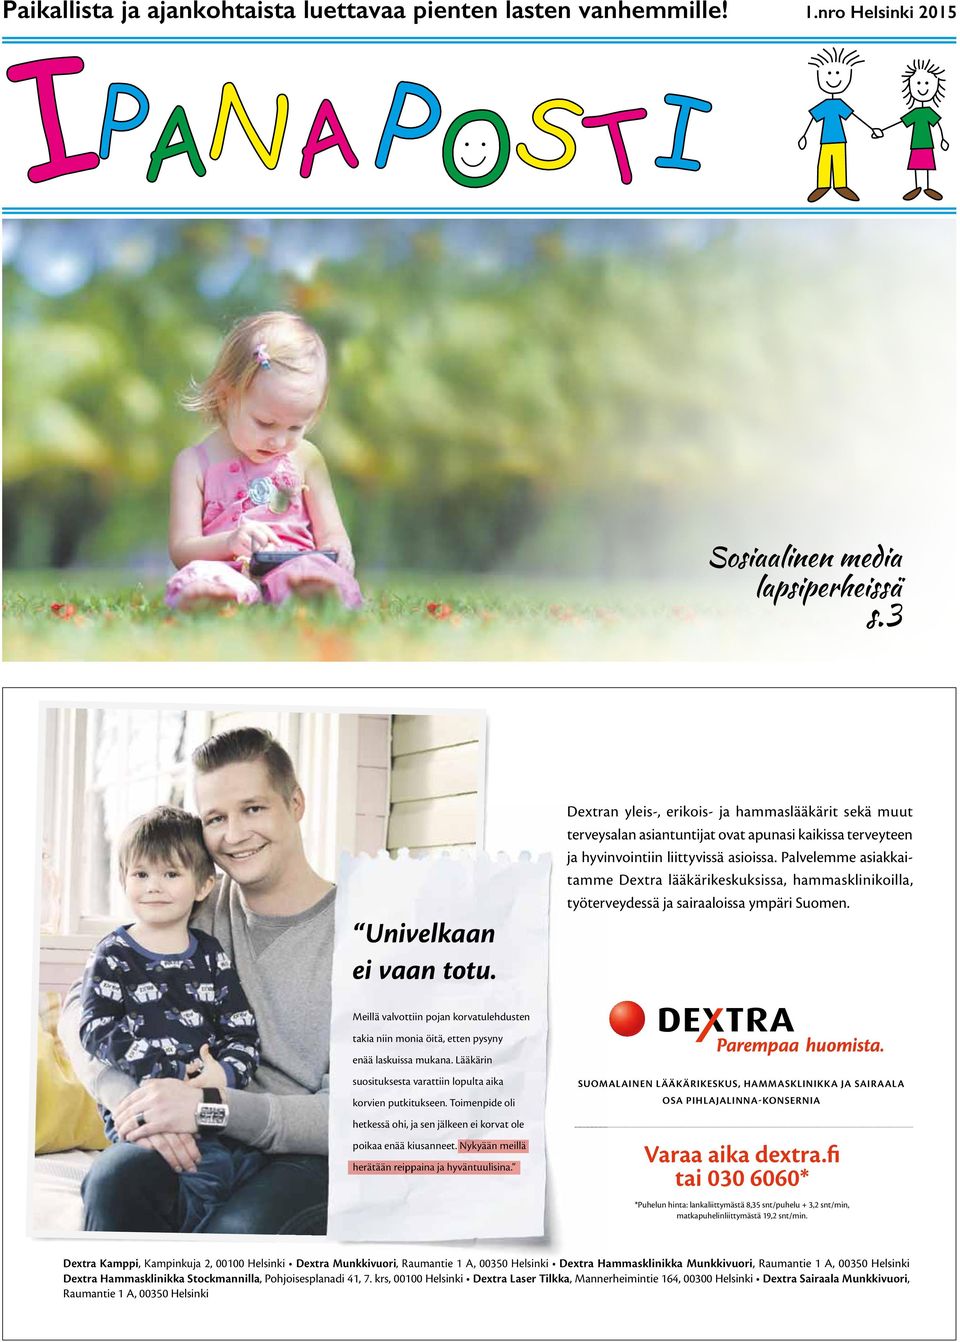 Palvelemme asiakkaitamme Dextra lääkärikeskuksissa, hammasklinikoilla, työterveydessä ja sairaaloissa ympäri Suomen.